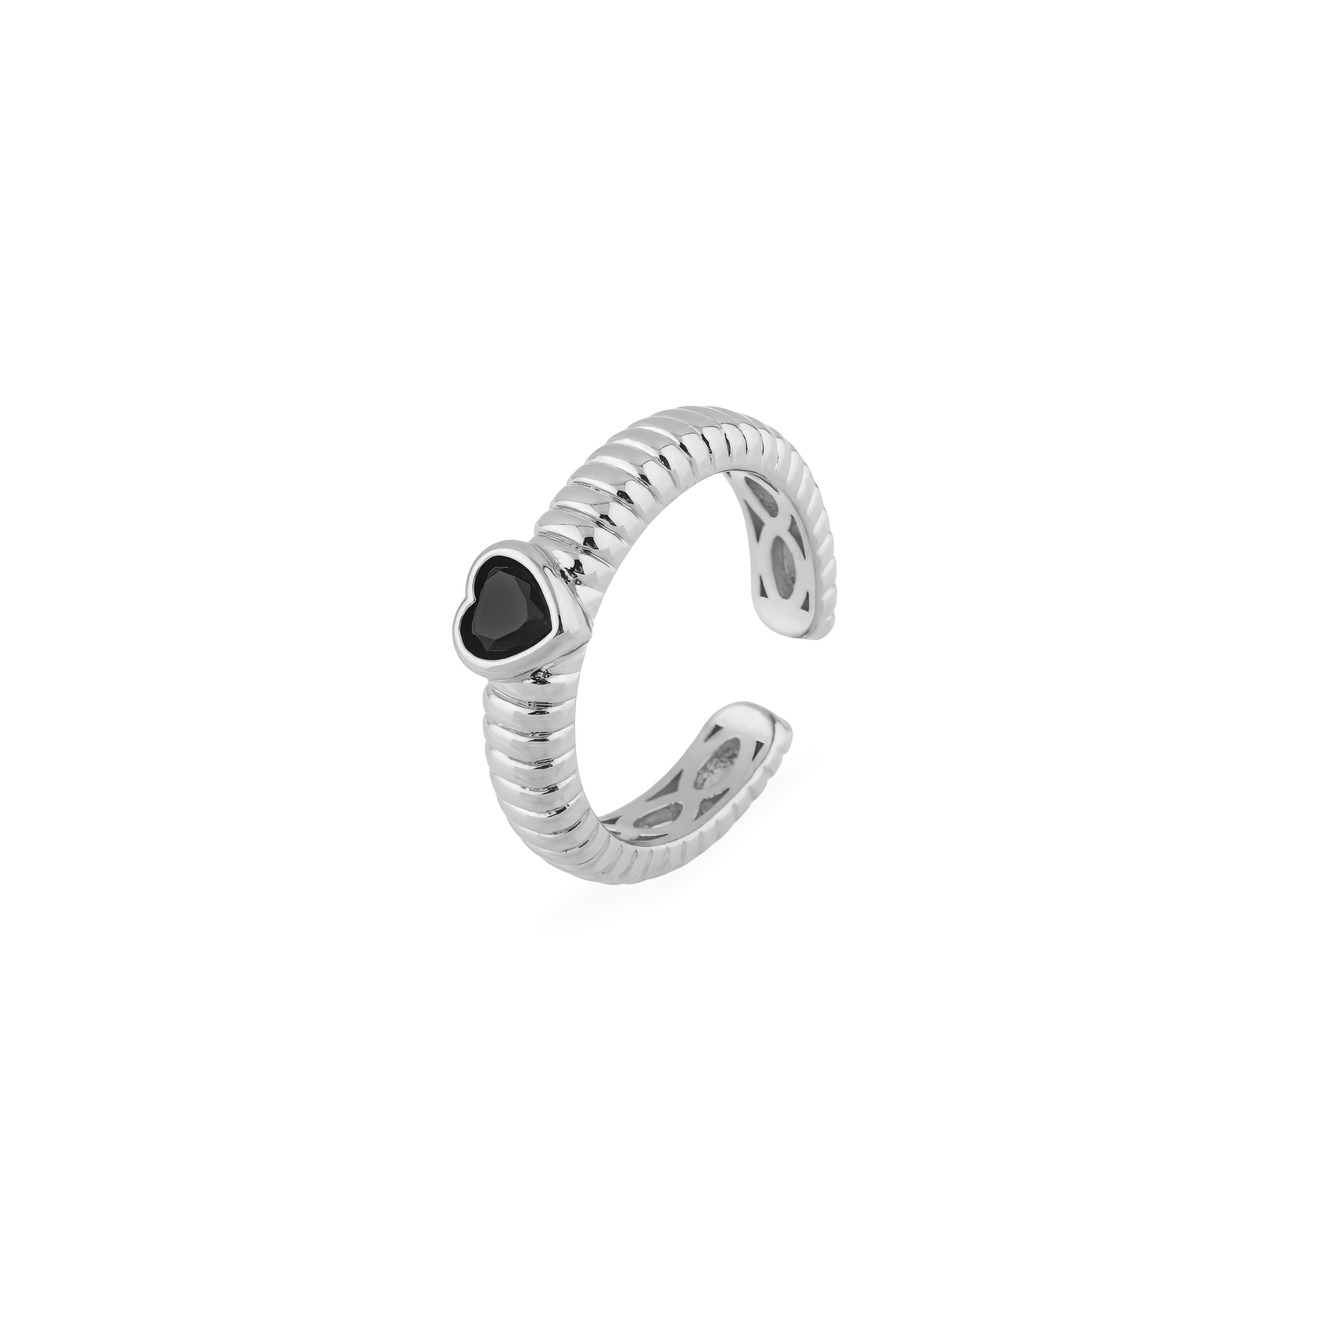 Herald Percy Серебристое фигурное кольцо с черным сердцем aqua серебристое кольцо с черным сердцем